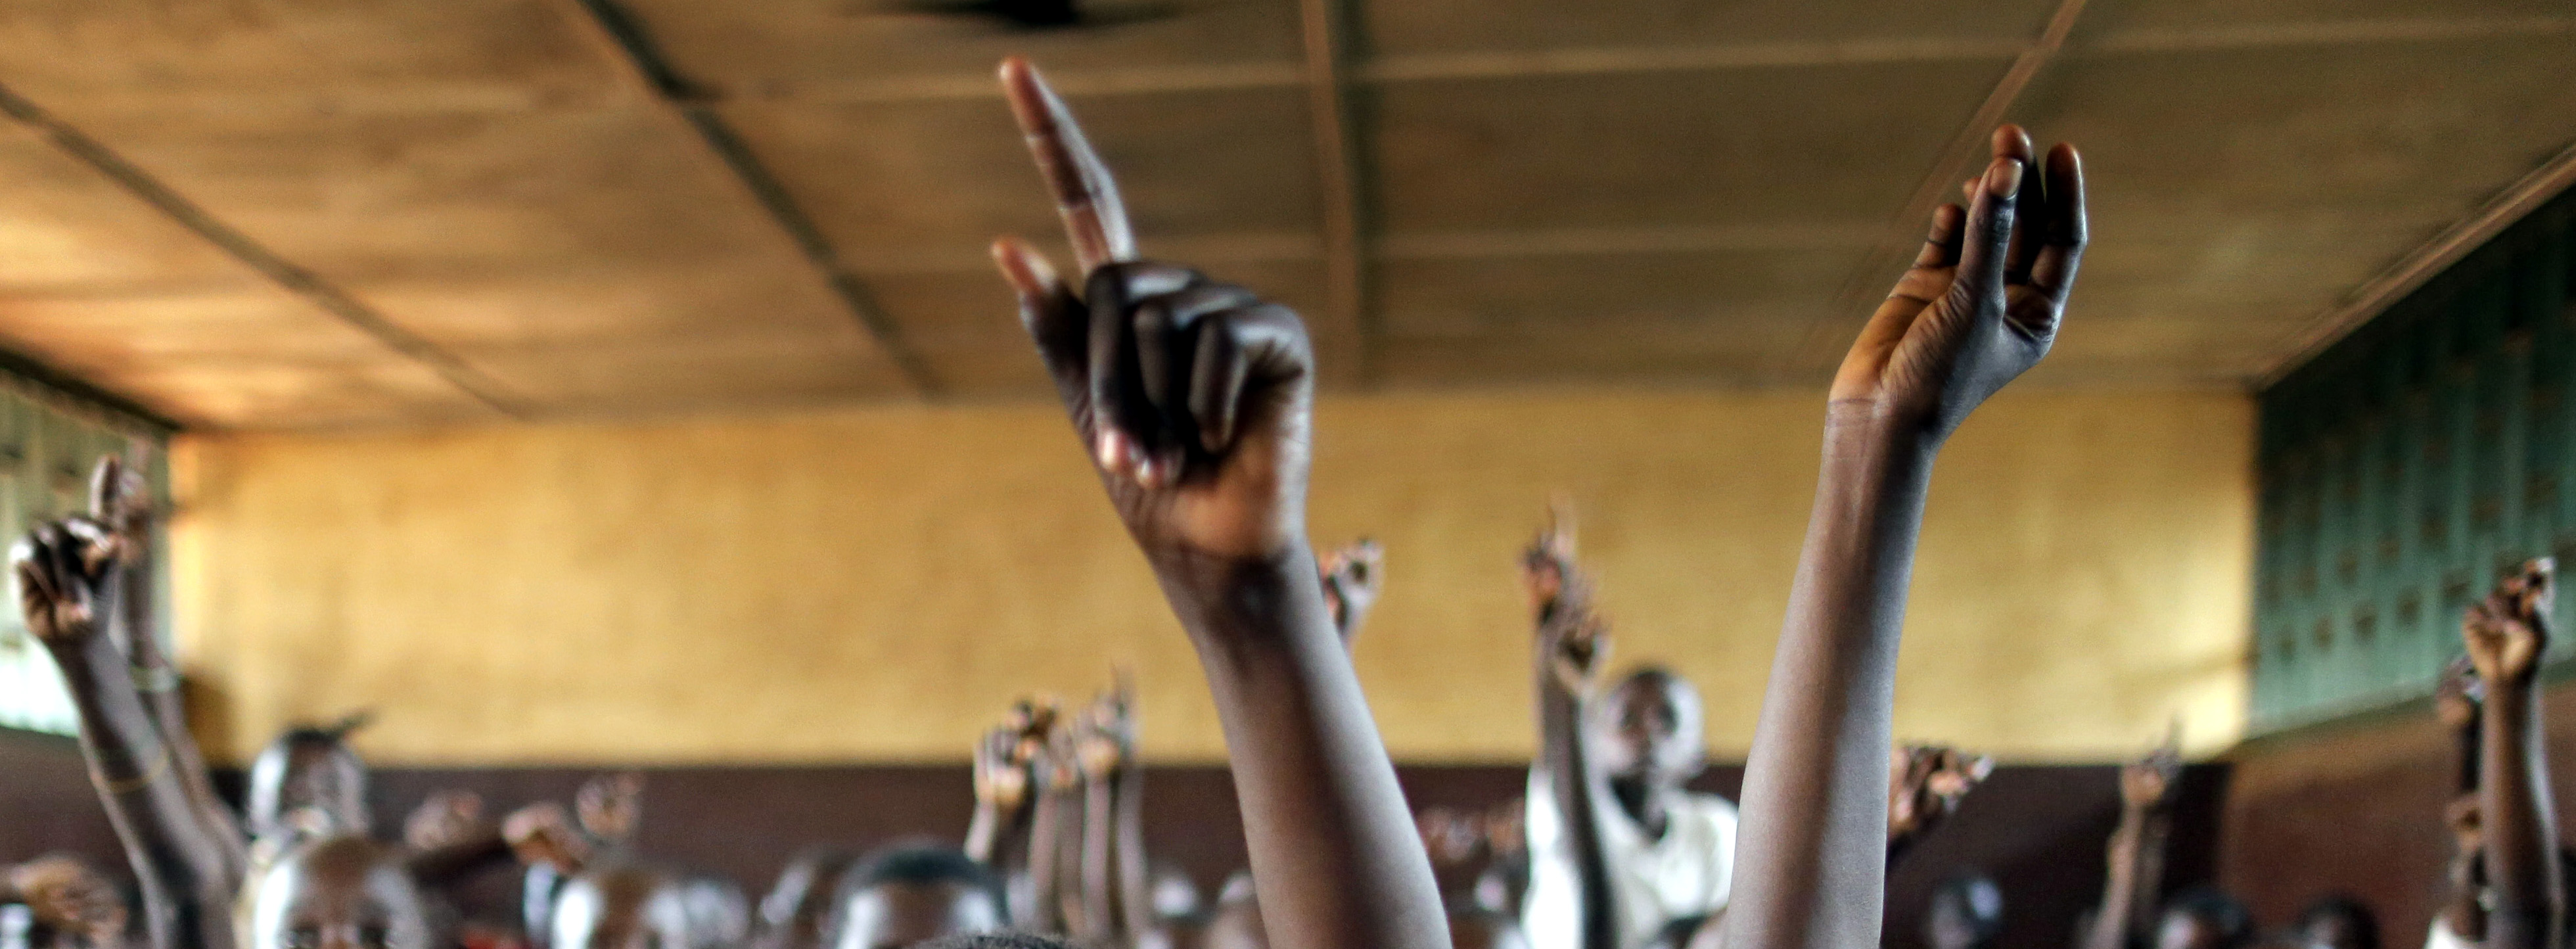 Symbolbild: Schülerinnen und Schüler melde sich im Unterricht durch Heben ihrer Hand